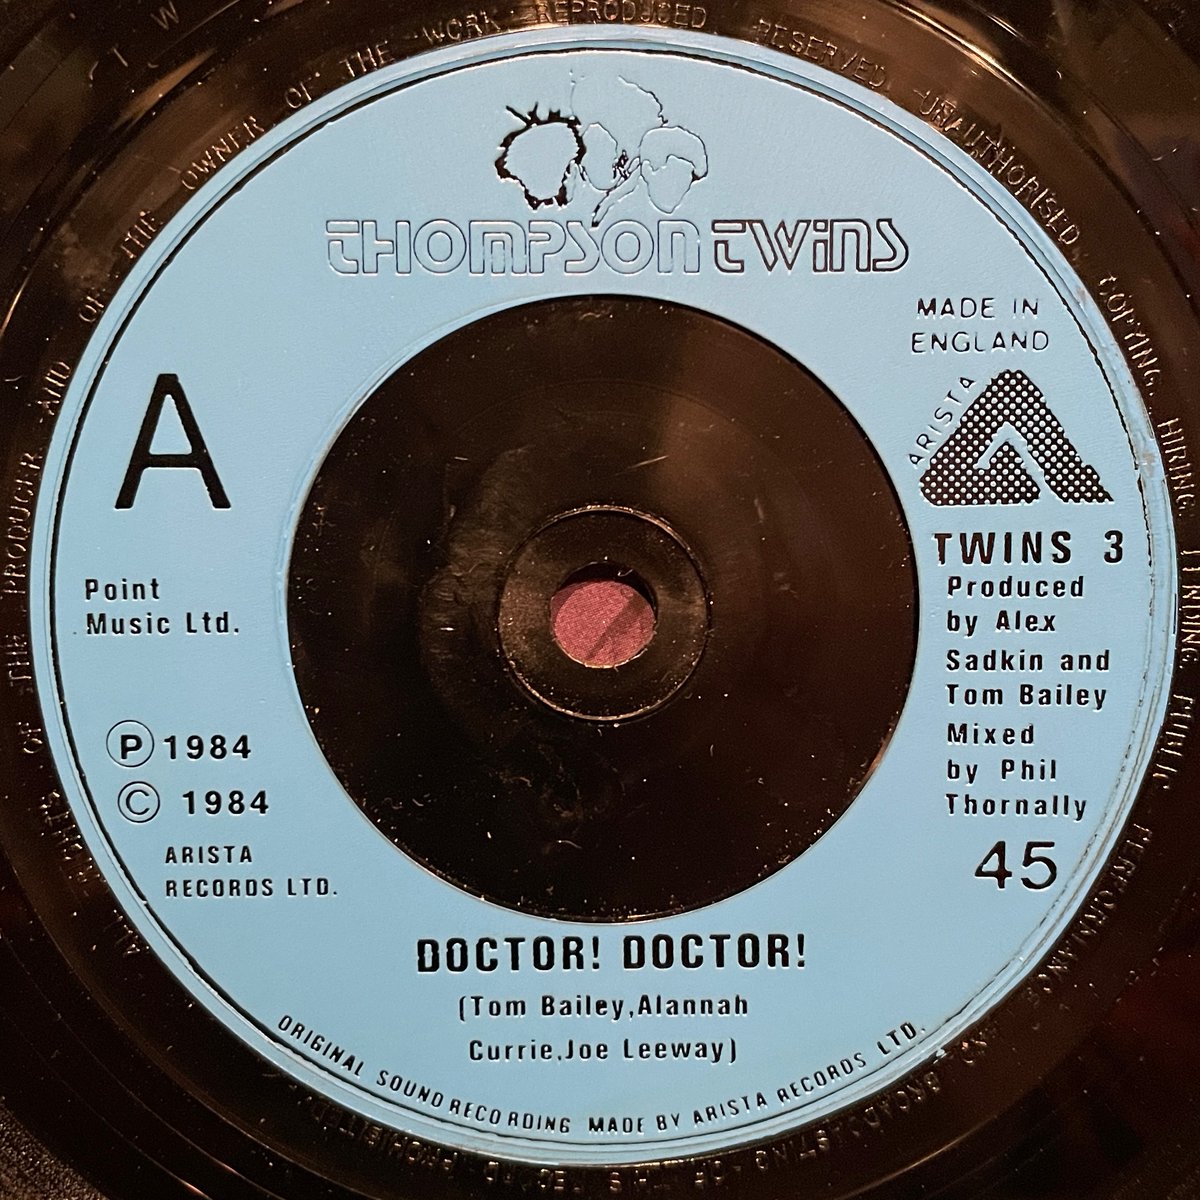 ほな7いこか
THOMPSON TWINS / Doctor! Doctor! [27Jan1984, Arista --- TWINS 3]
#OnThisDay #ThompsonTwins #DoctorDoctor #IntoTheGap #AlexSadkin #TomBailey #AlannahCurrie #JoeLeeway #listeningbar #vinylbar #musicbar #レコードバー #mhc27012024
youtube.com/watch?v=Z3BEec…